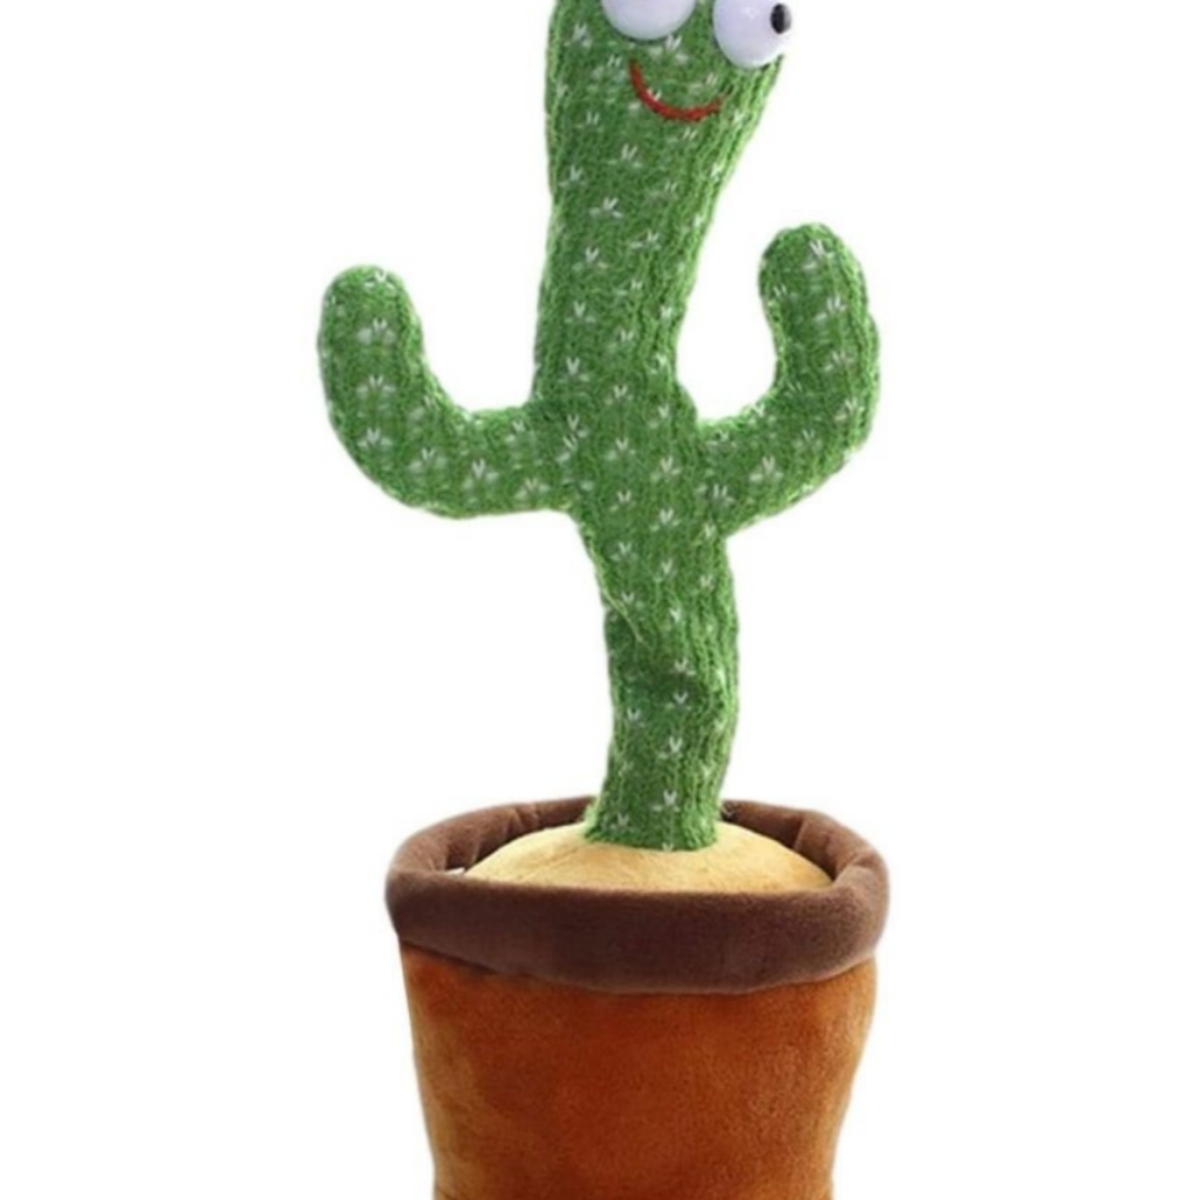 ELKUAIE Plüschtier Kaktusform